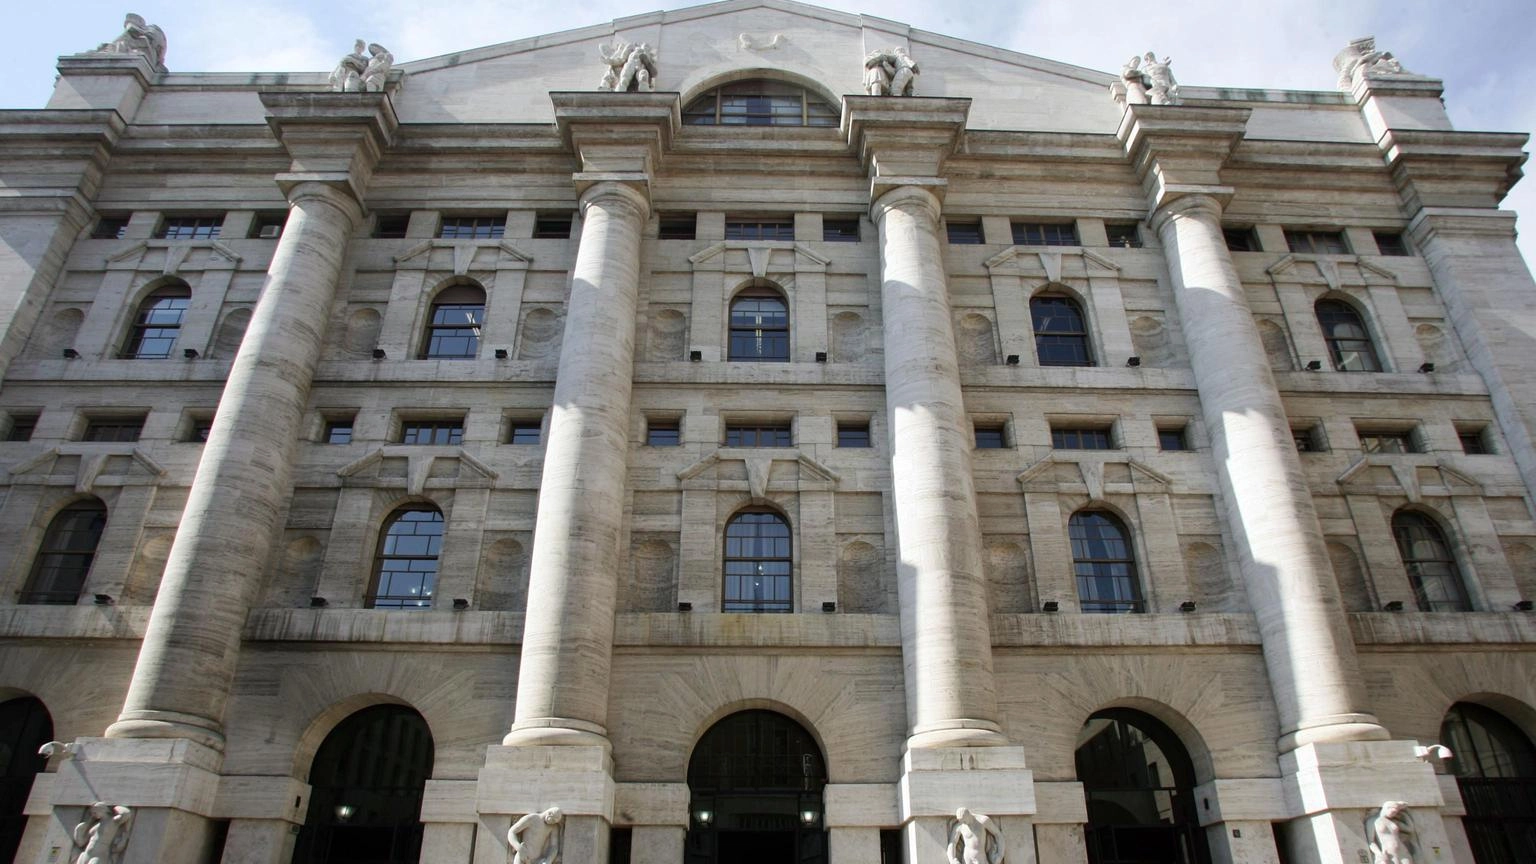 Borsa: Milano migliore in Europa con le banche, bene A2a